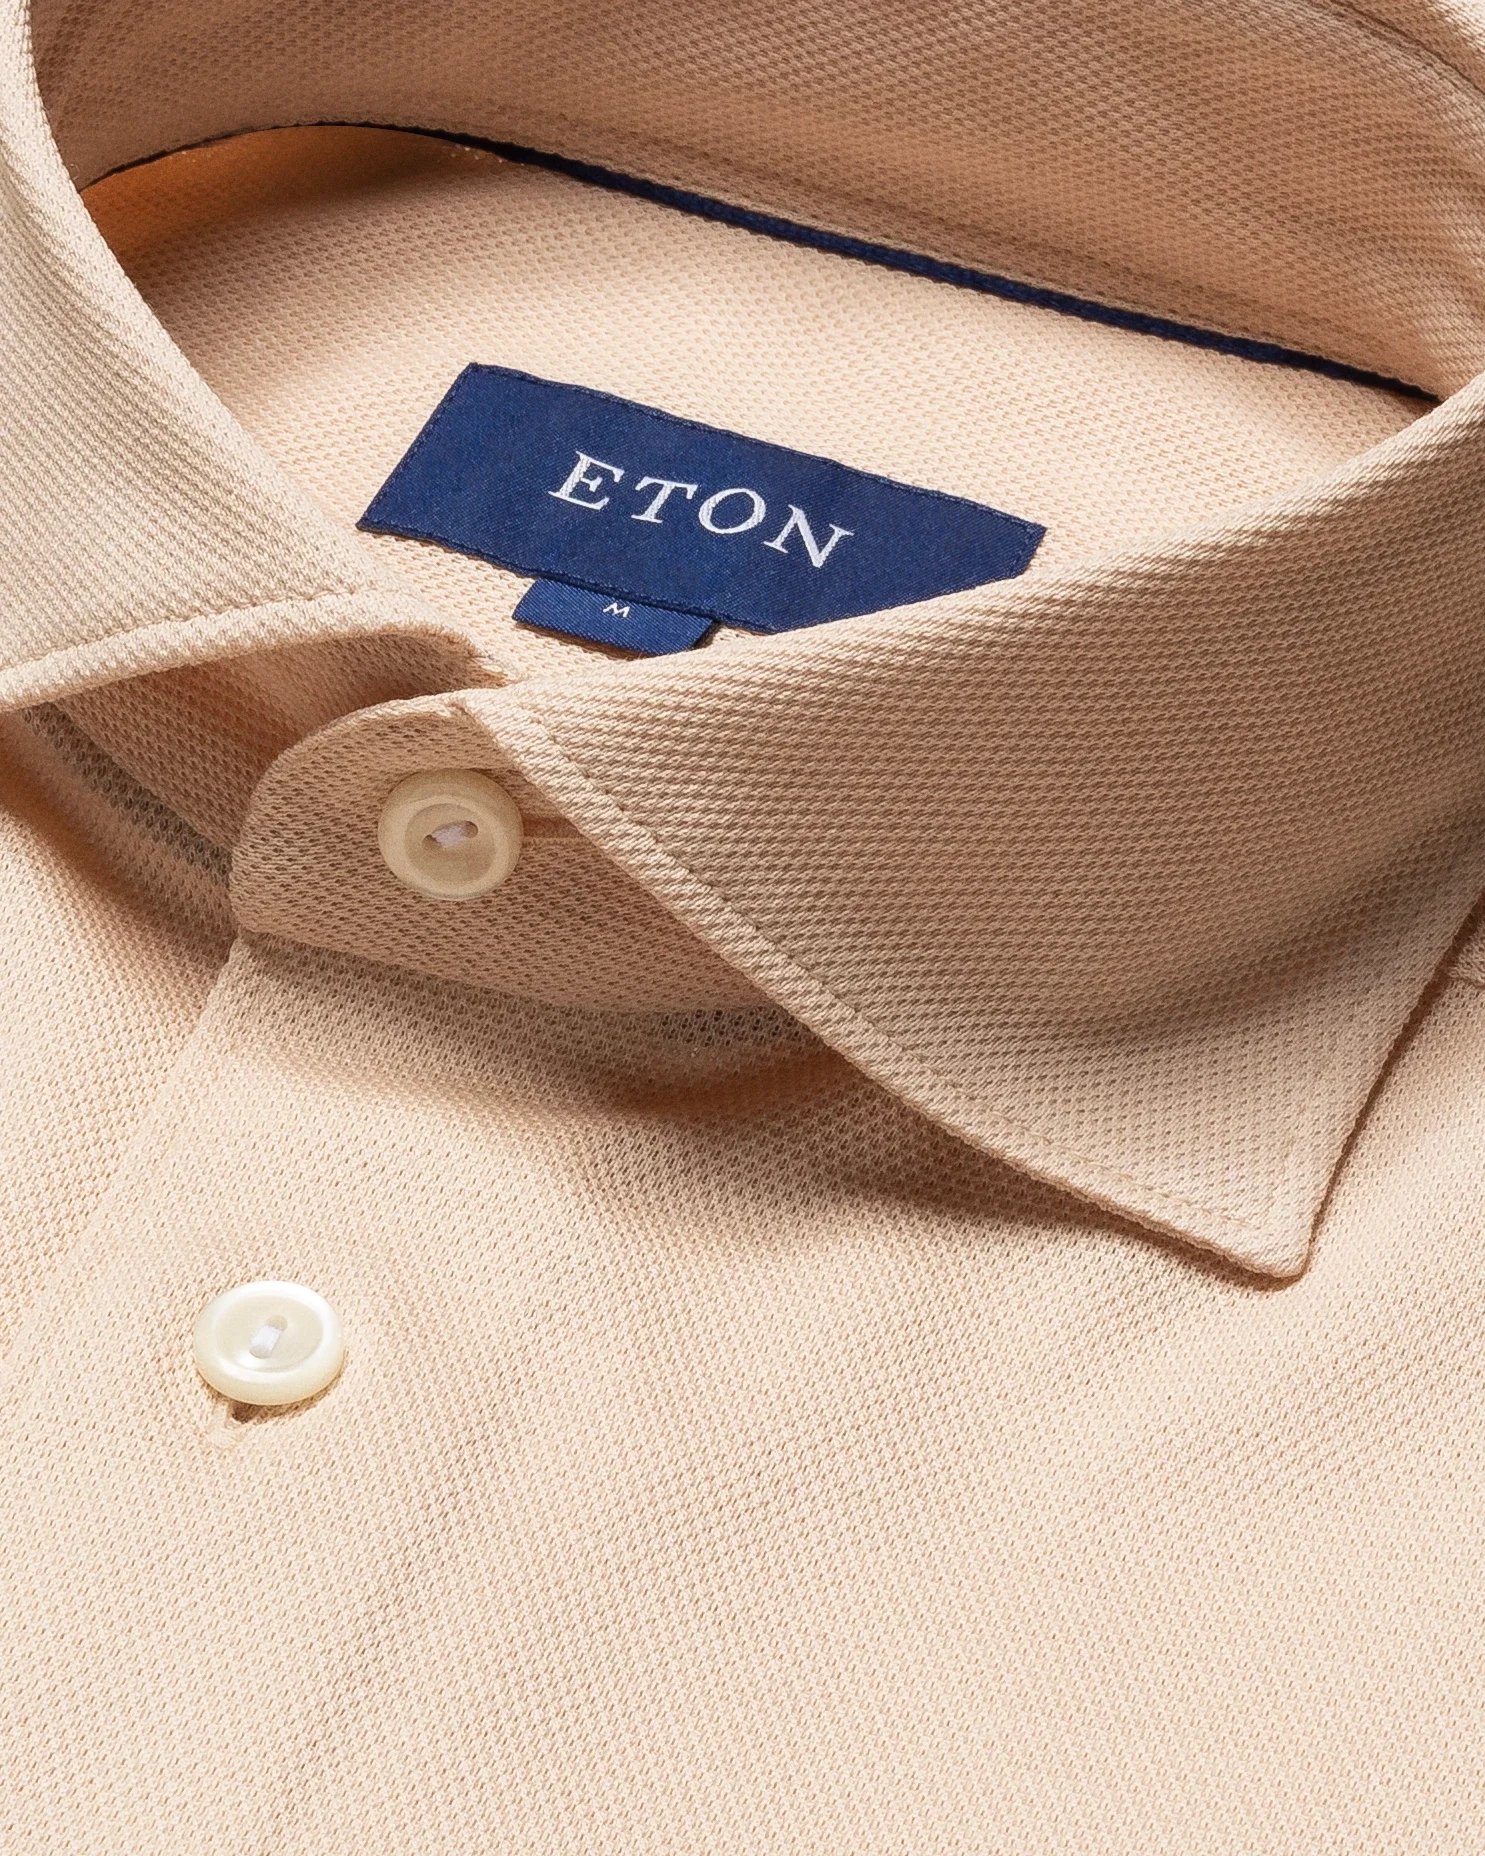 Eton - off white pique shirt